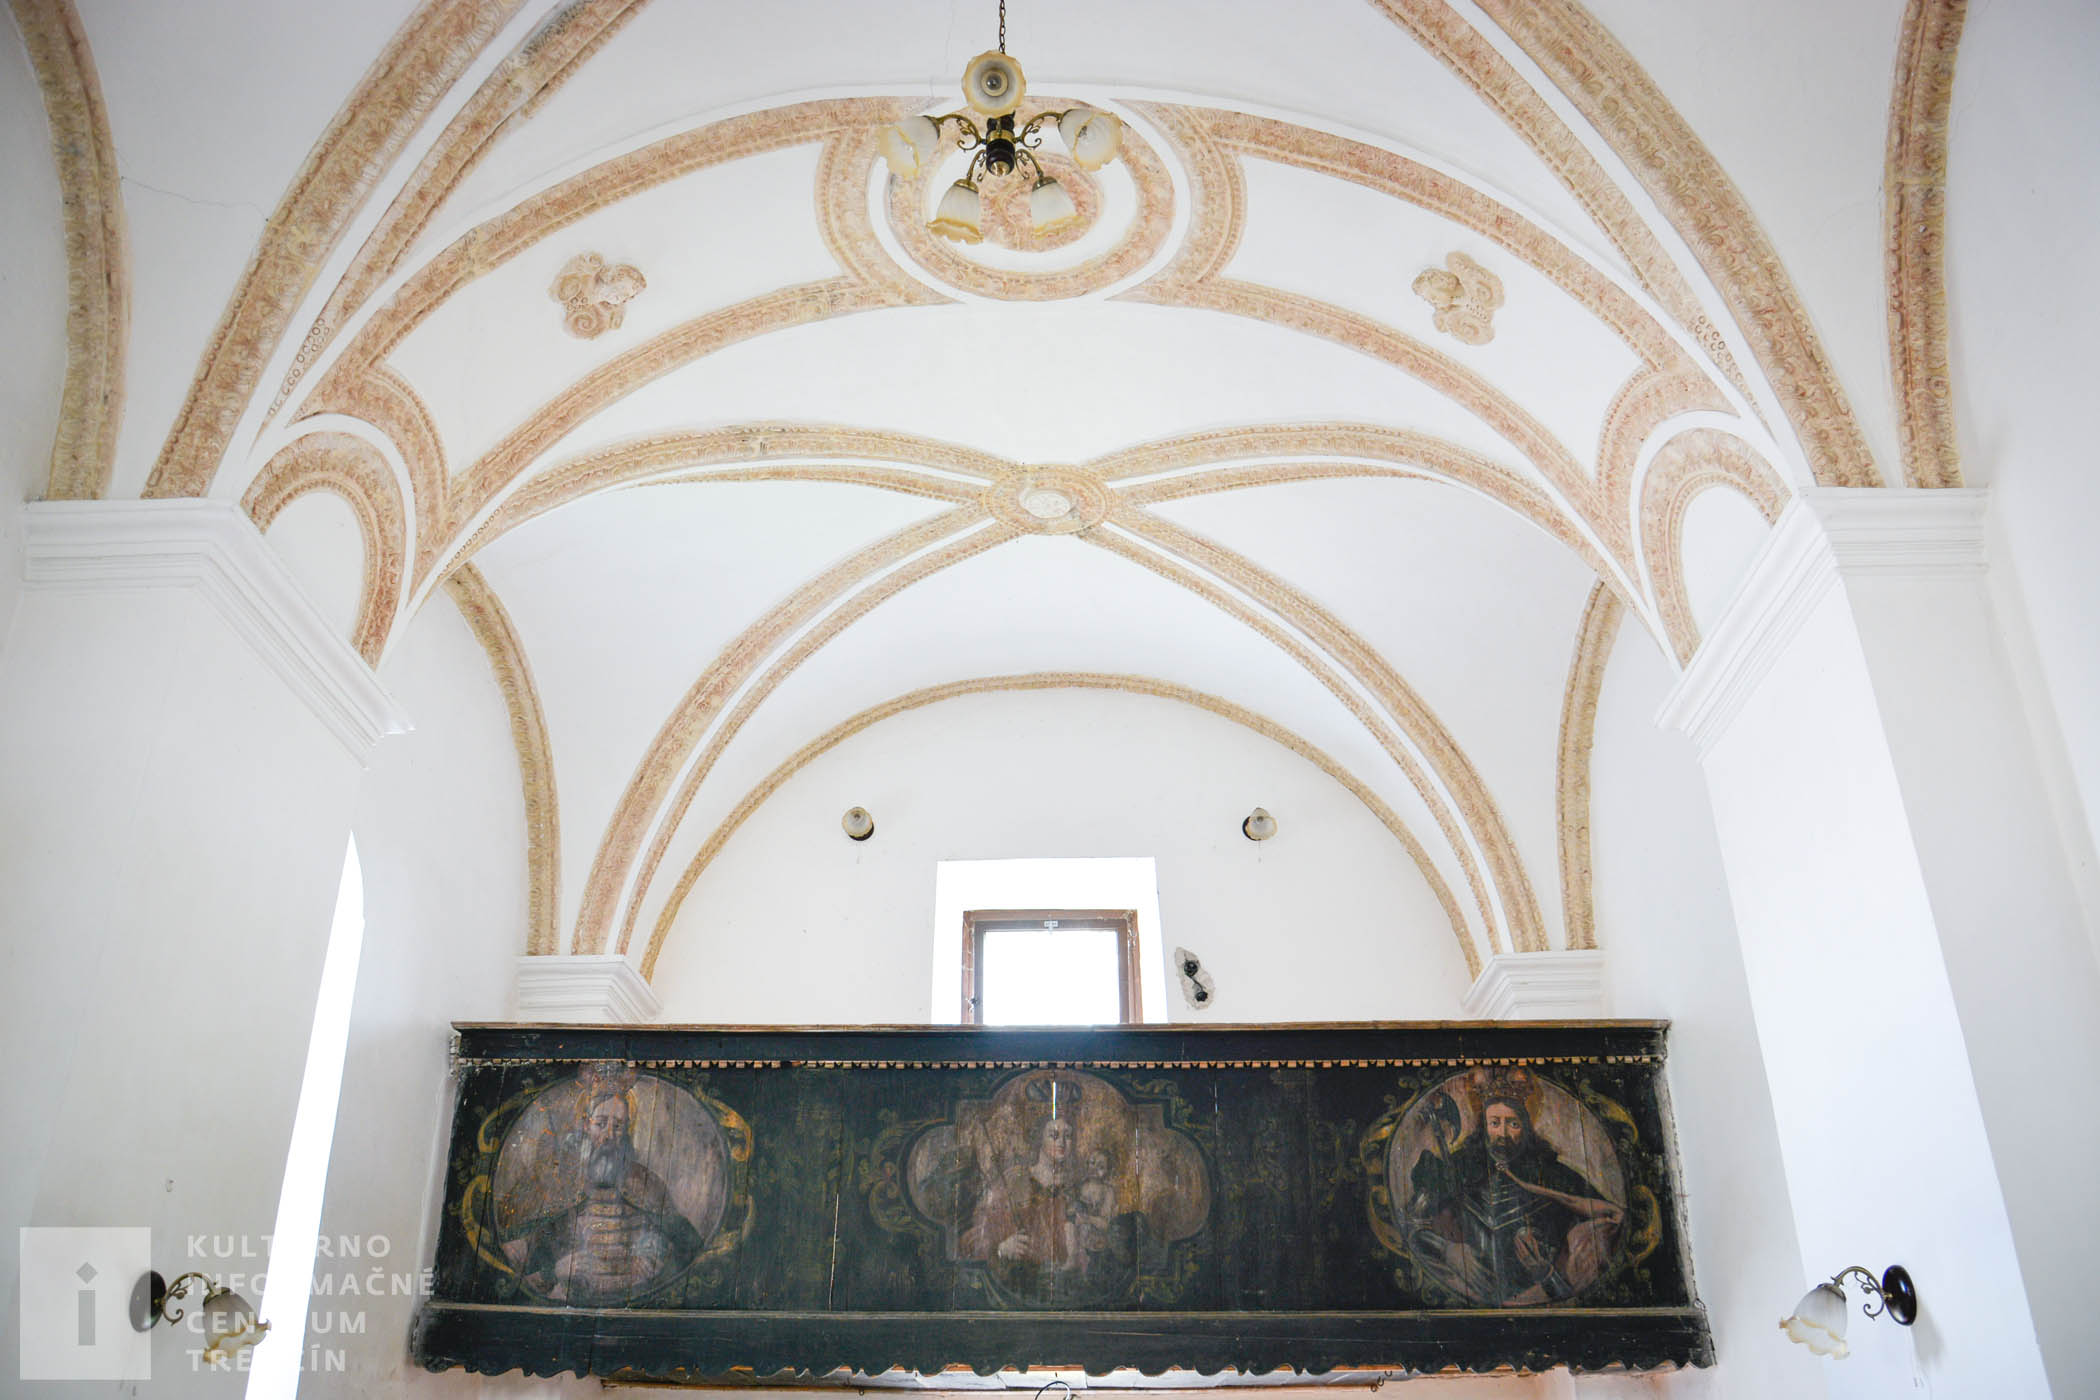 Nad vchodom kaplnky je drevený chór s maľovanými obrazmi svätcov, bol sem prevezený z hradnej kaplnky